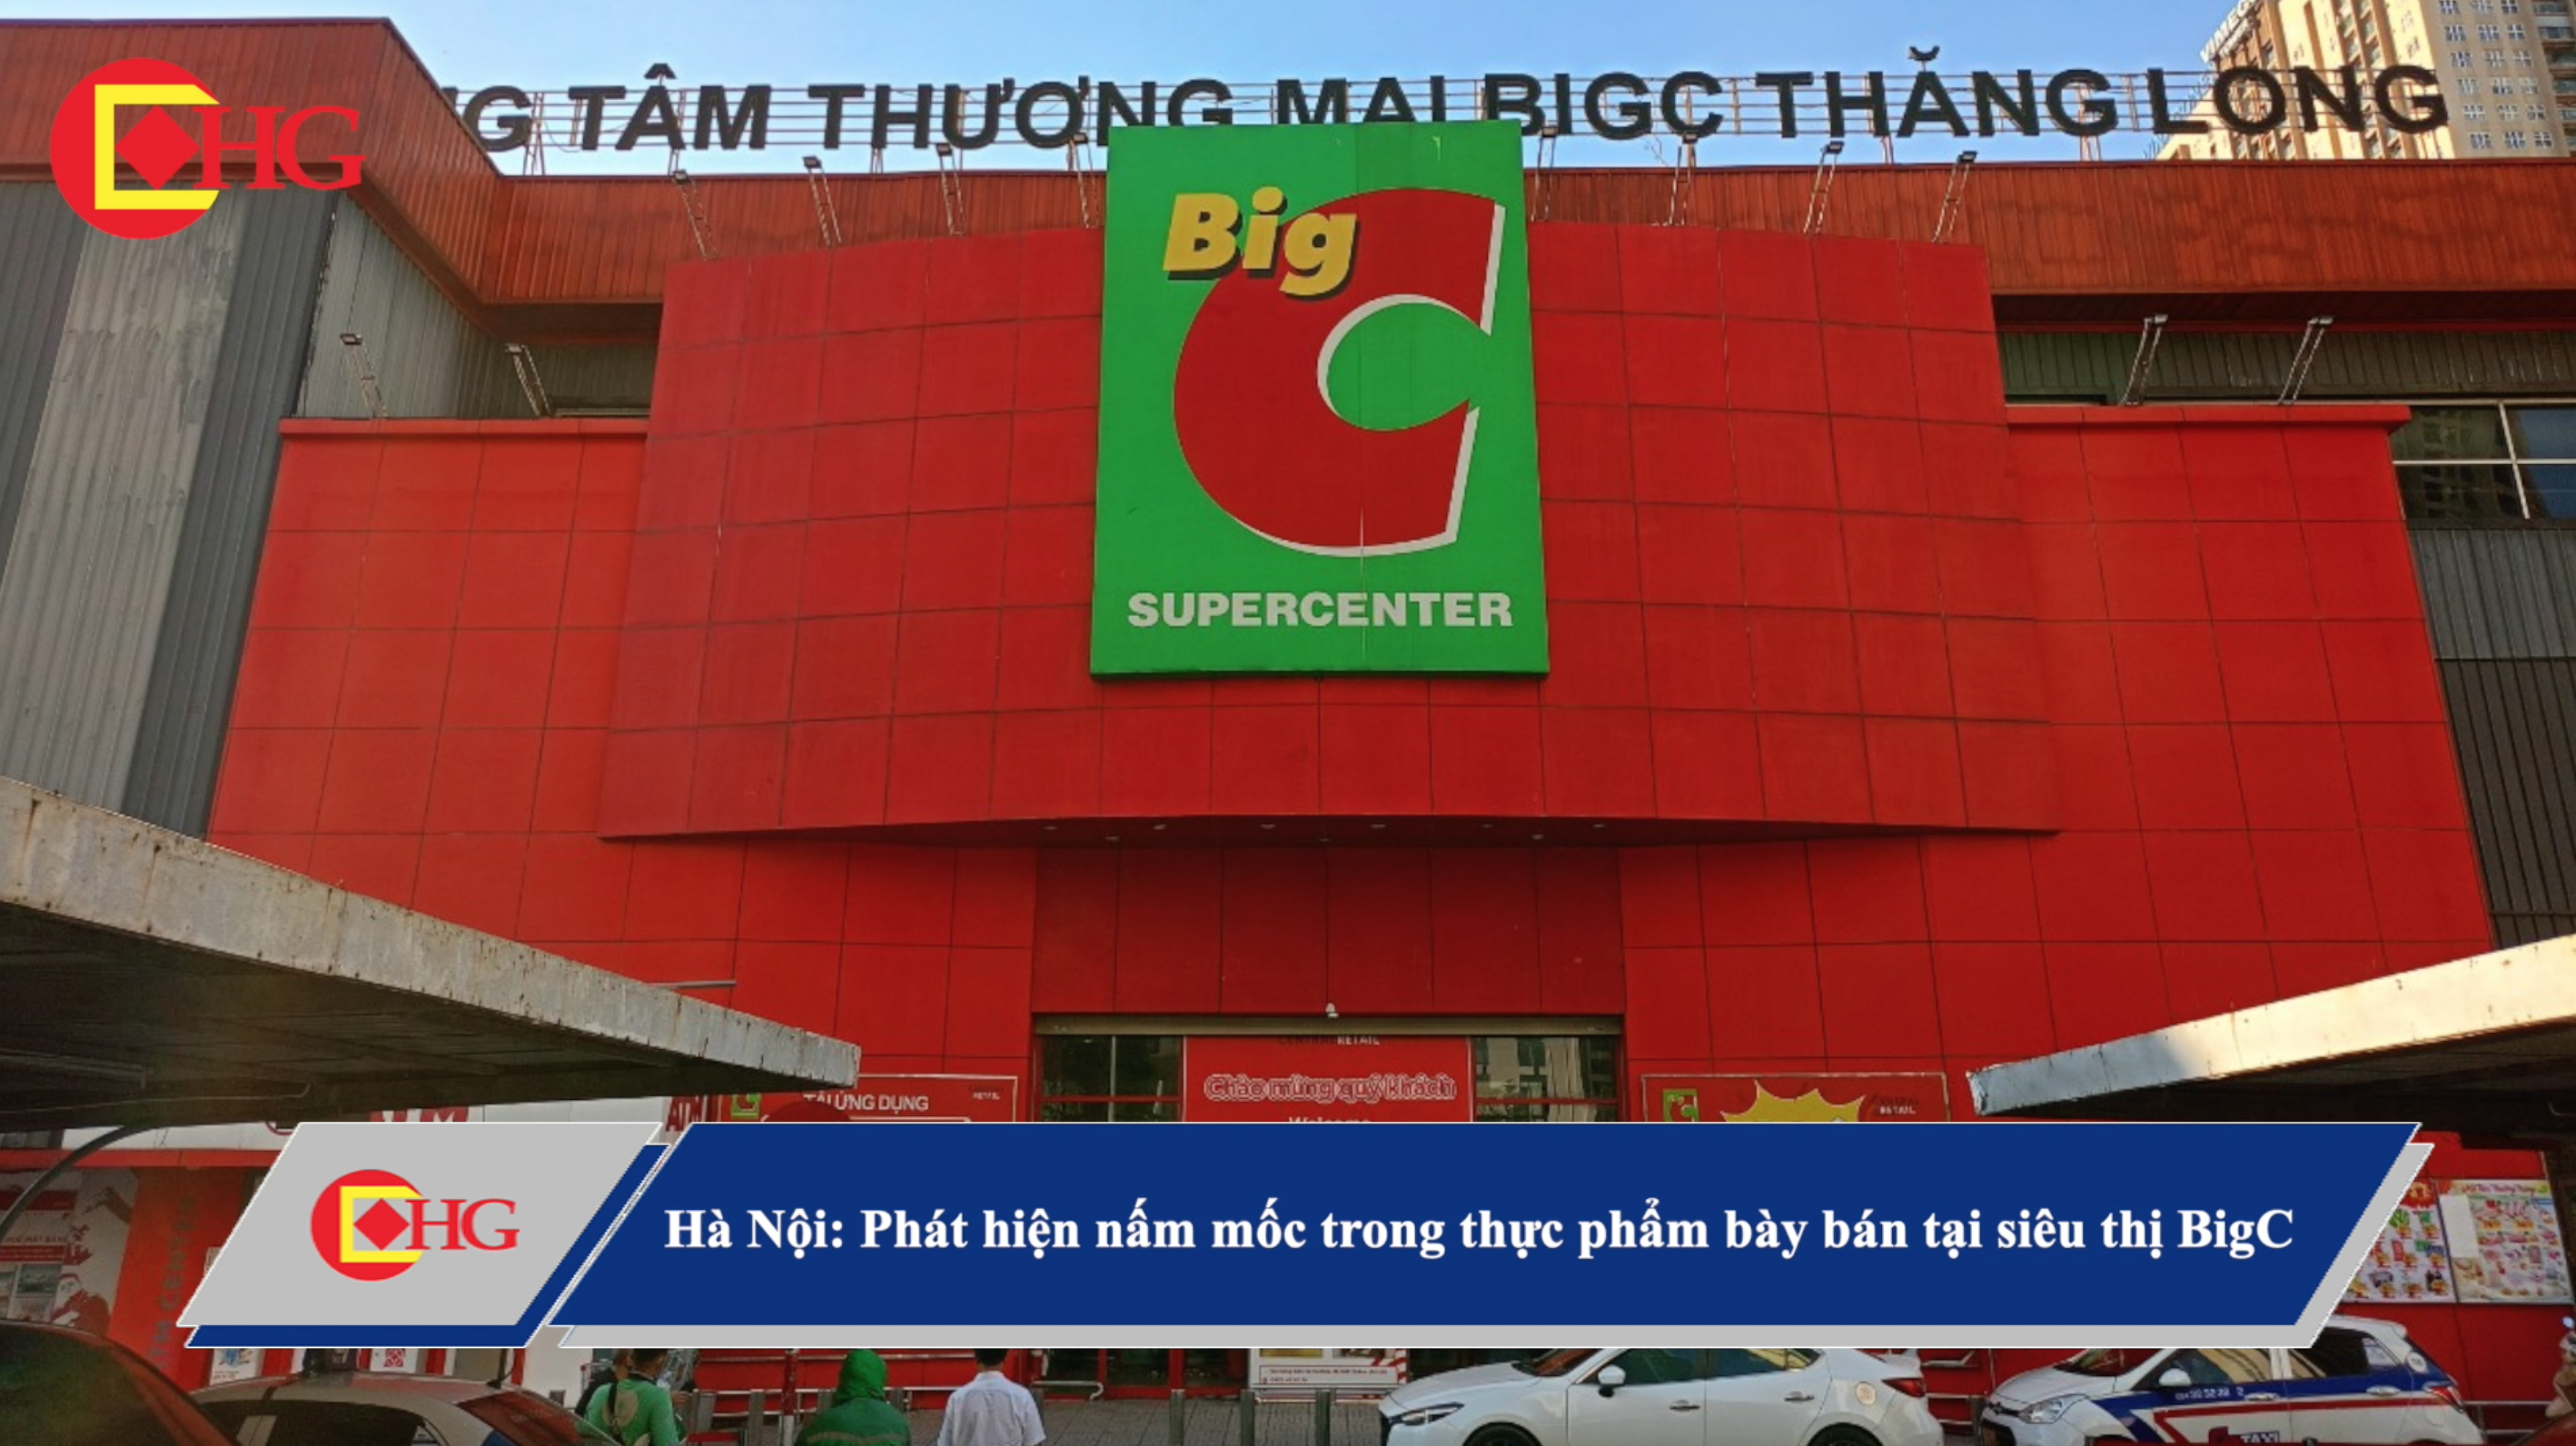 Hà Nội: Phát hiện nấm mốc trong thực phẩm bày bán tại siêu thị BigC